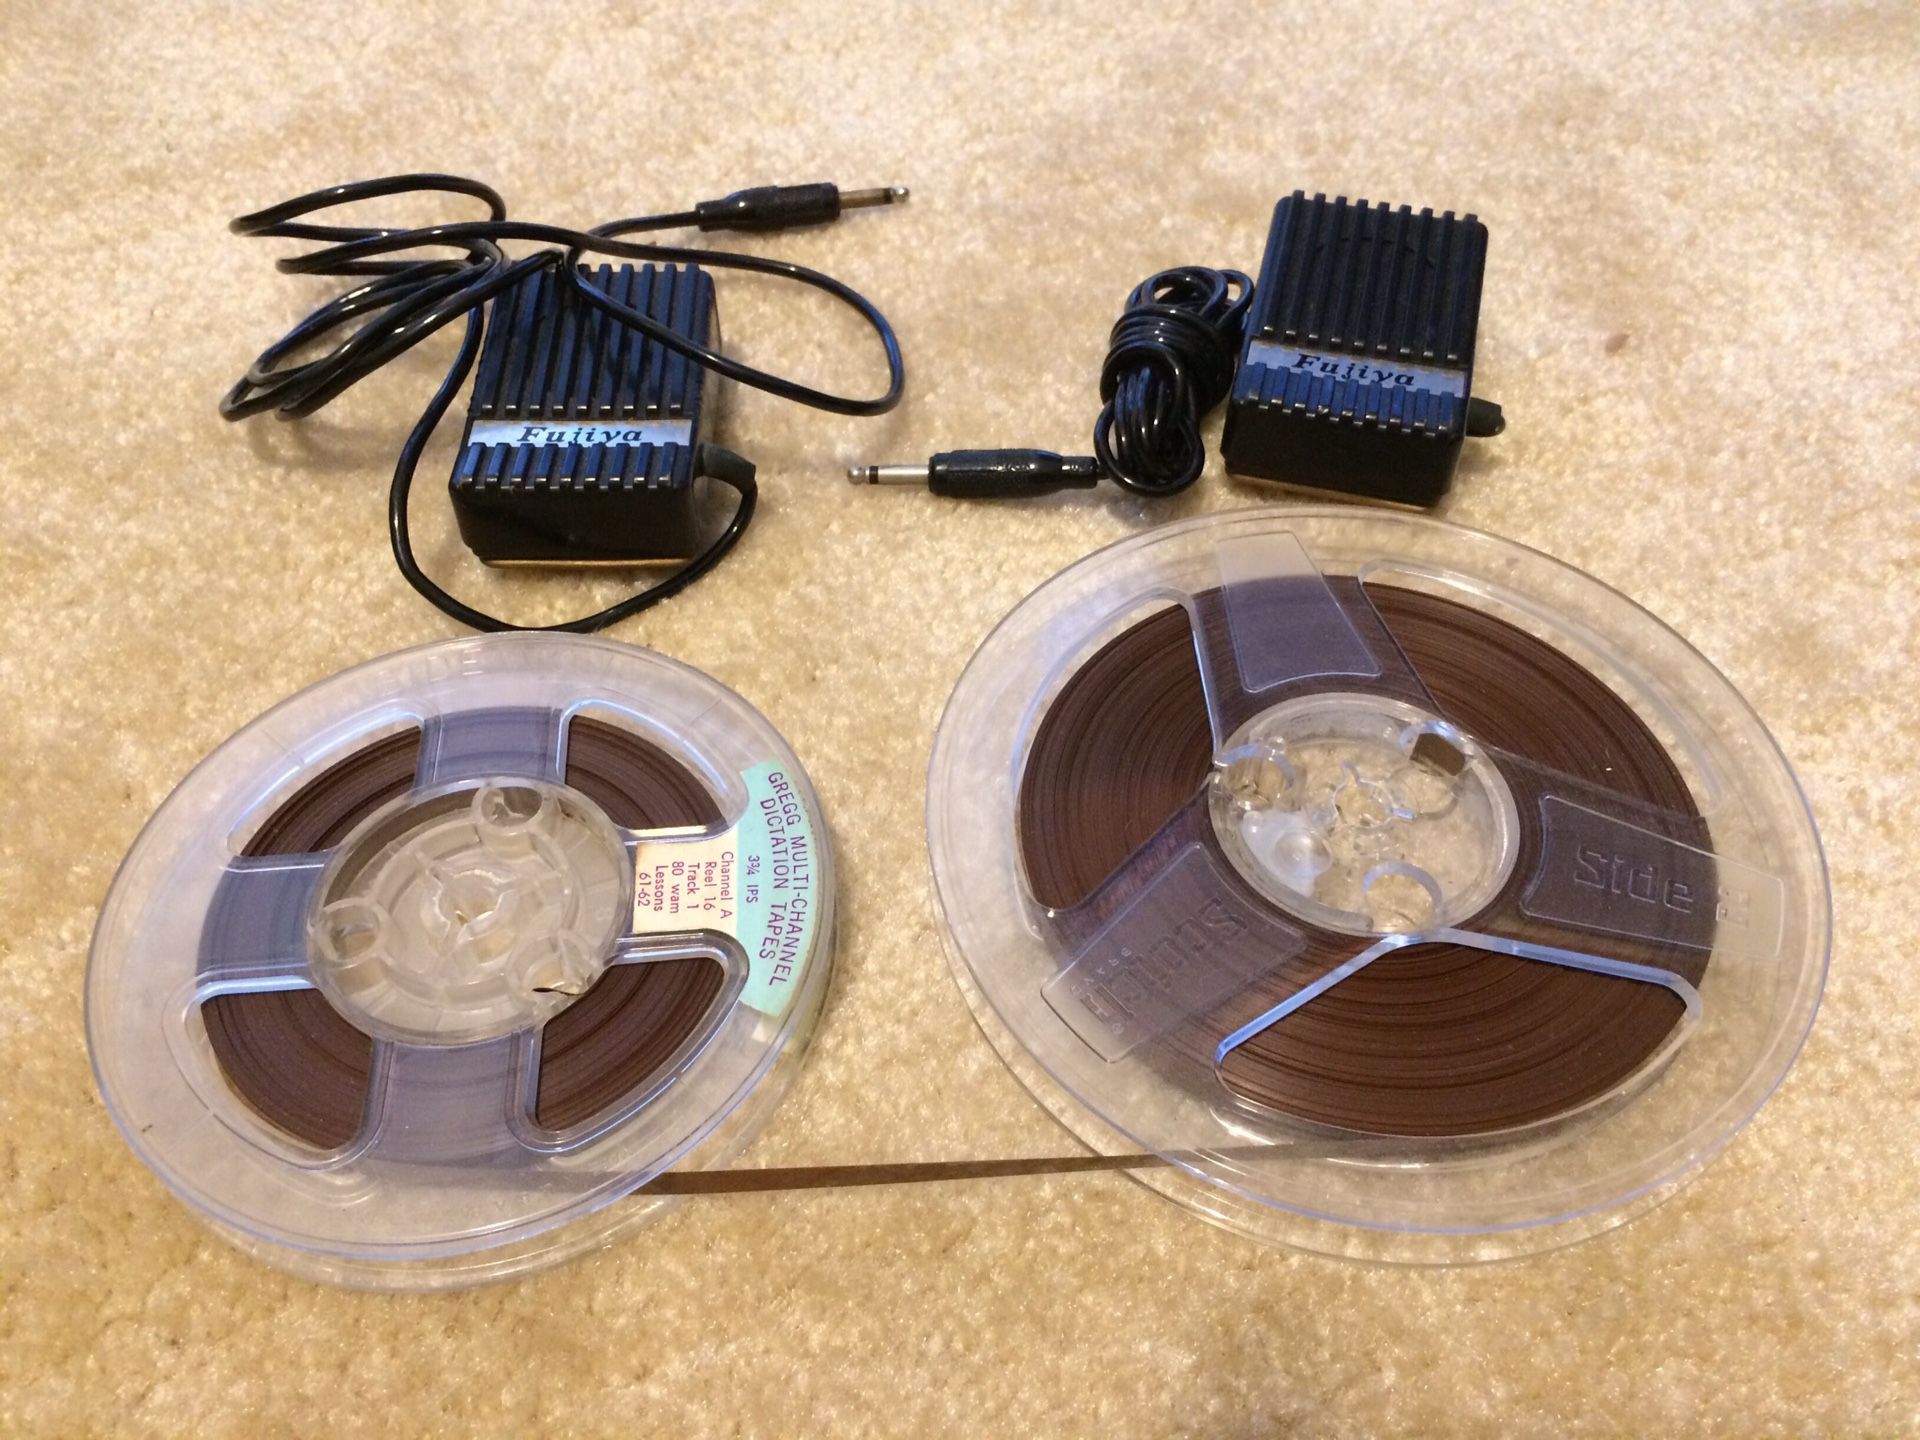 2 Fujiya Microphones and reel to reel tape